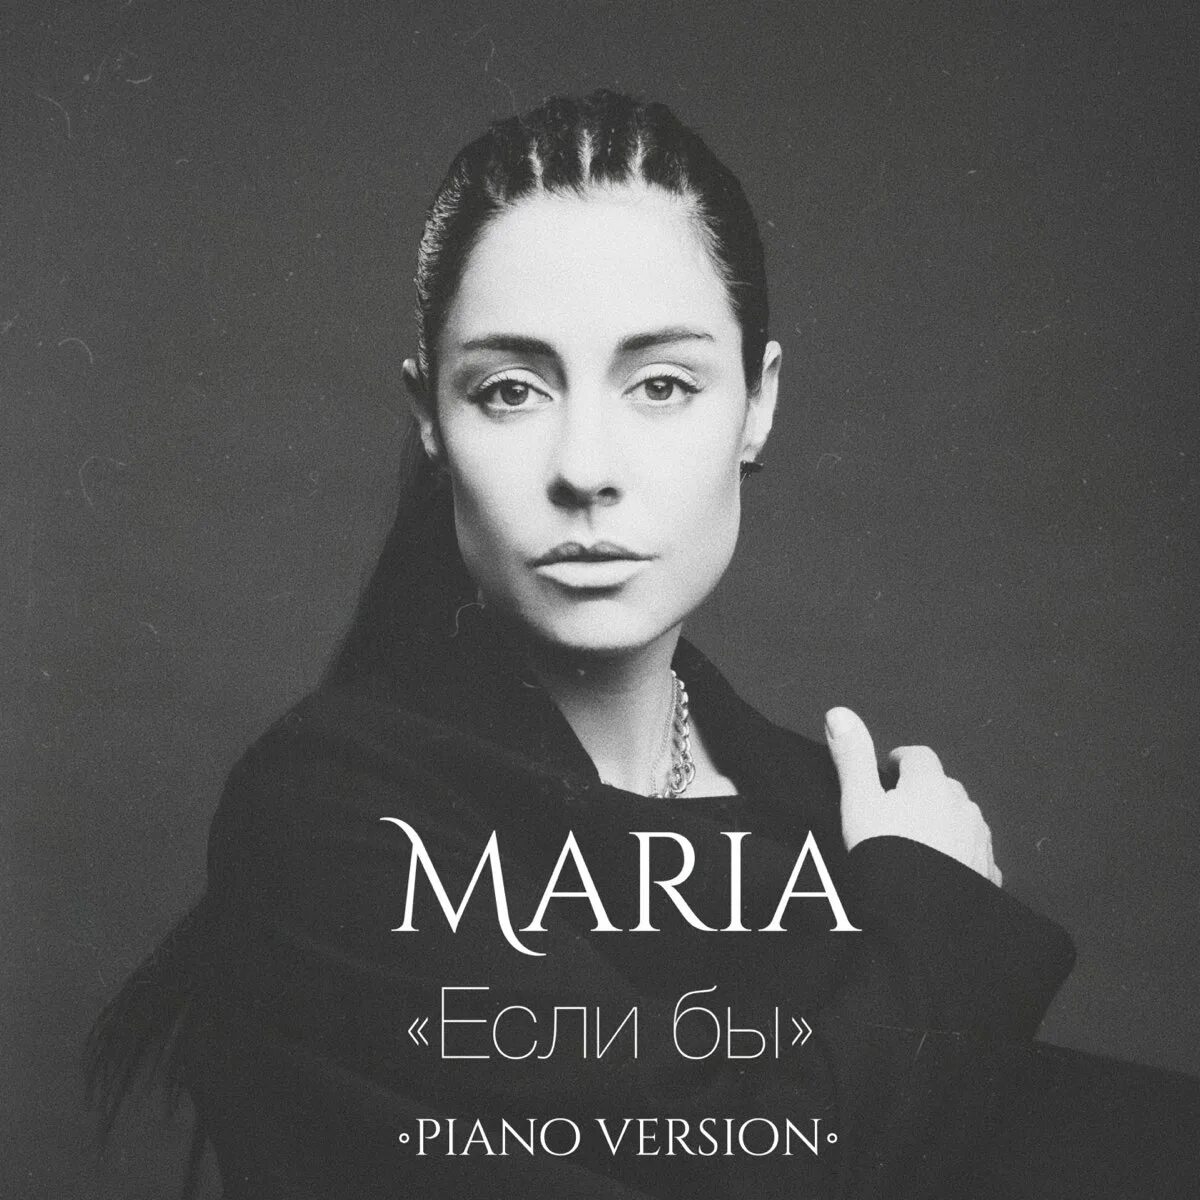 Maria song